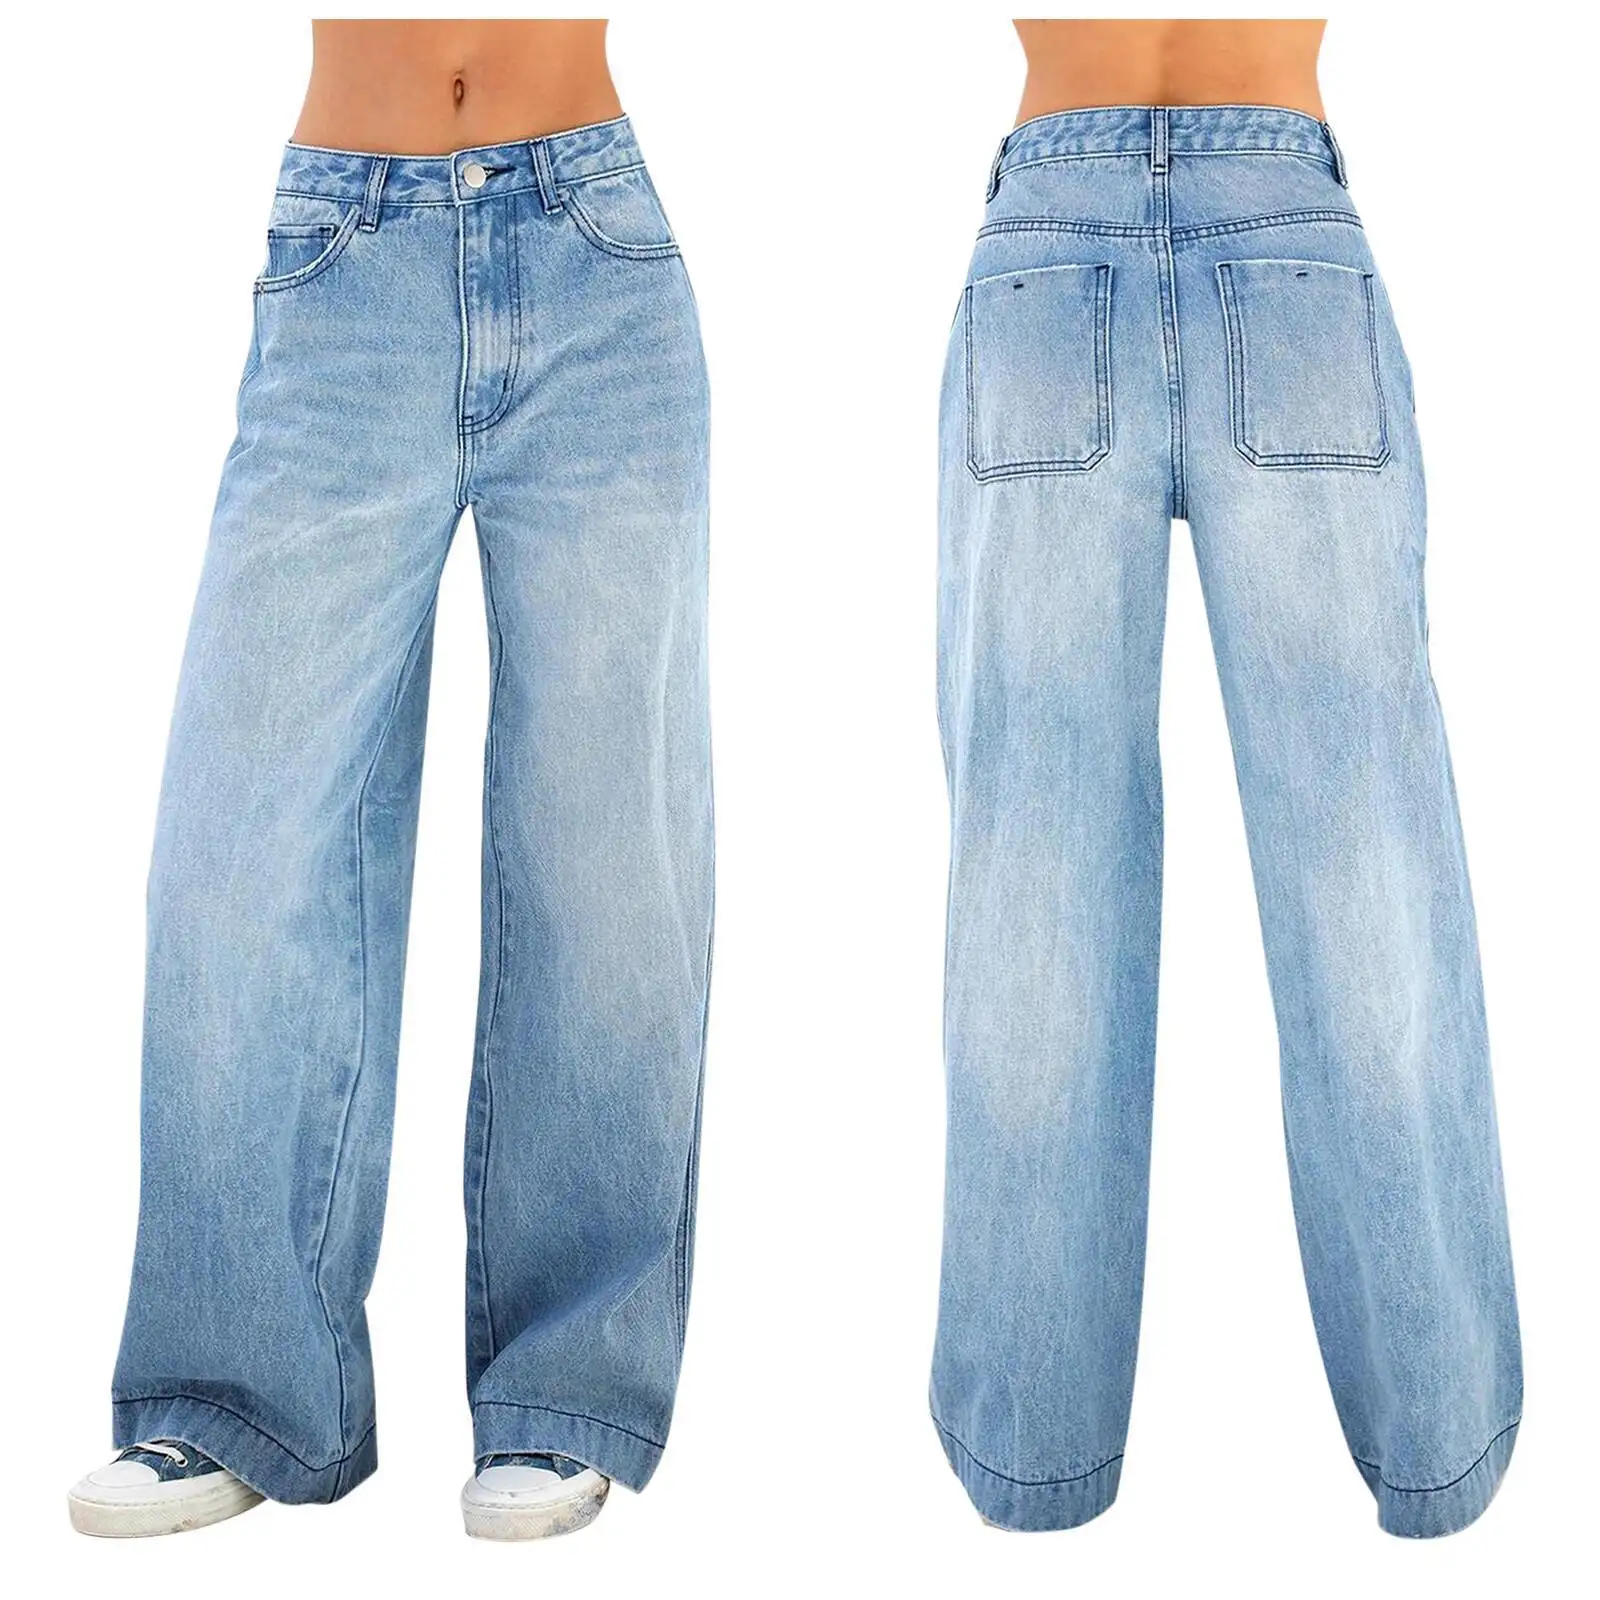 Mulheres Elastic Stretch Jeans Cintura Alta Calças Cor Sólida Mulheres Calças Lápis Skinny Jeans Denim Calças jeans da menina